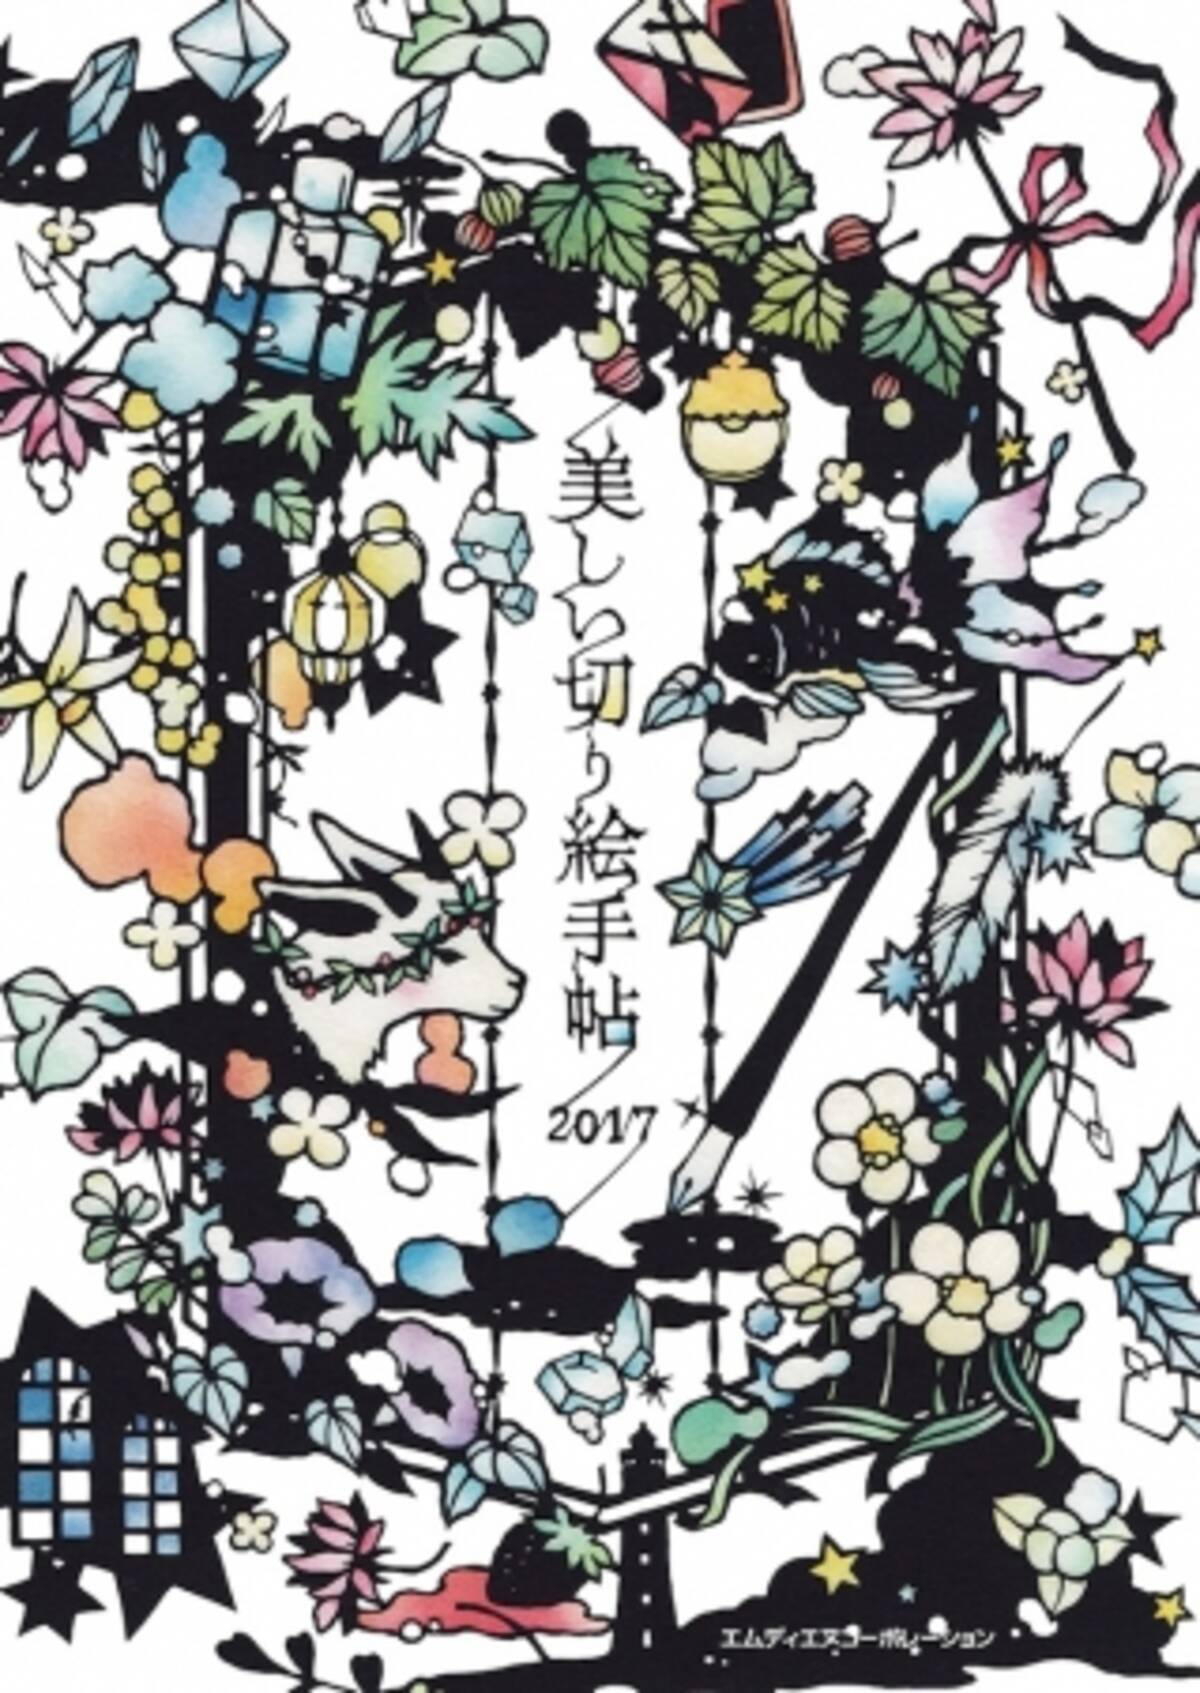 人気切り絵作家 大橋忍さんの美しい切り絵が手帳になりました 美しい切り絵手帖 17 10月18日発売 16年10月4日 エキサイトニュース 2 3